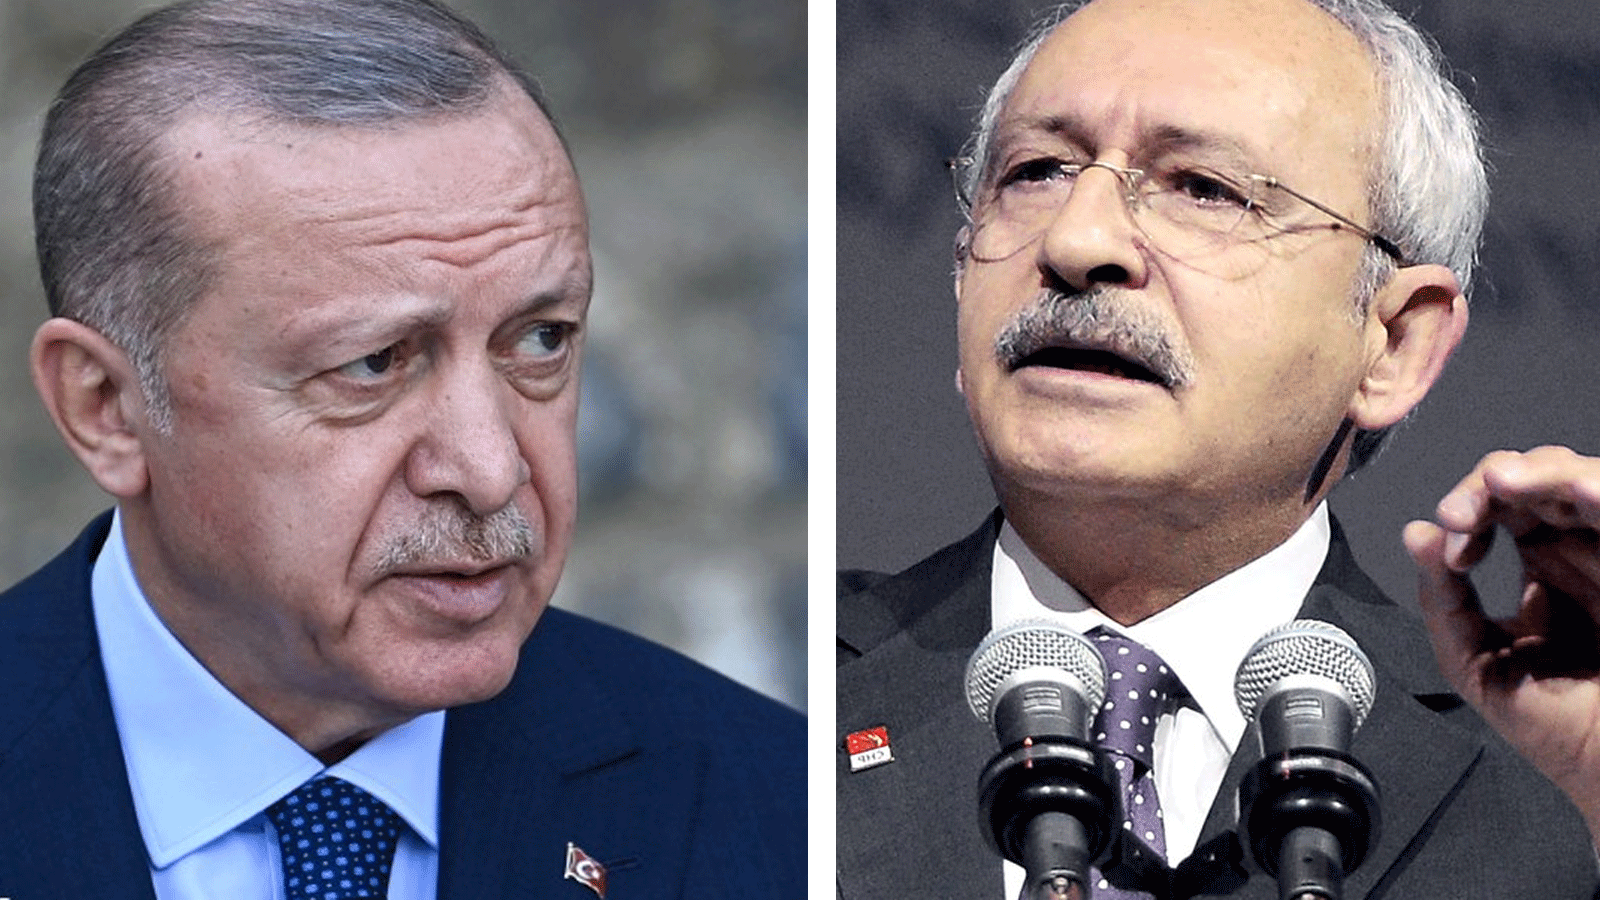 المرشحان المتنافسان الأقوى في الانتخابات التركية الرئاسية كيليجدار أوغلو وإردوغان